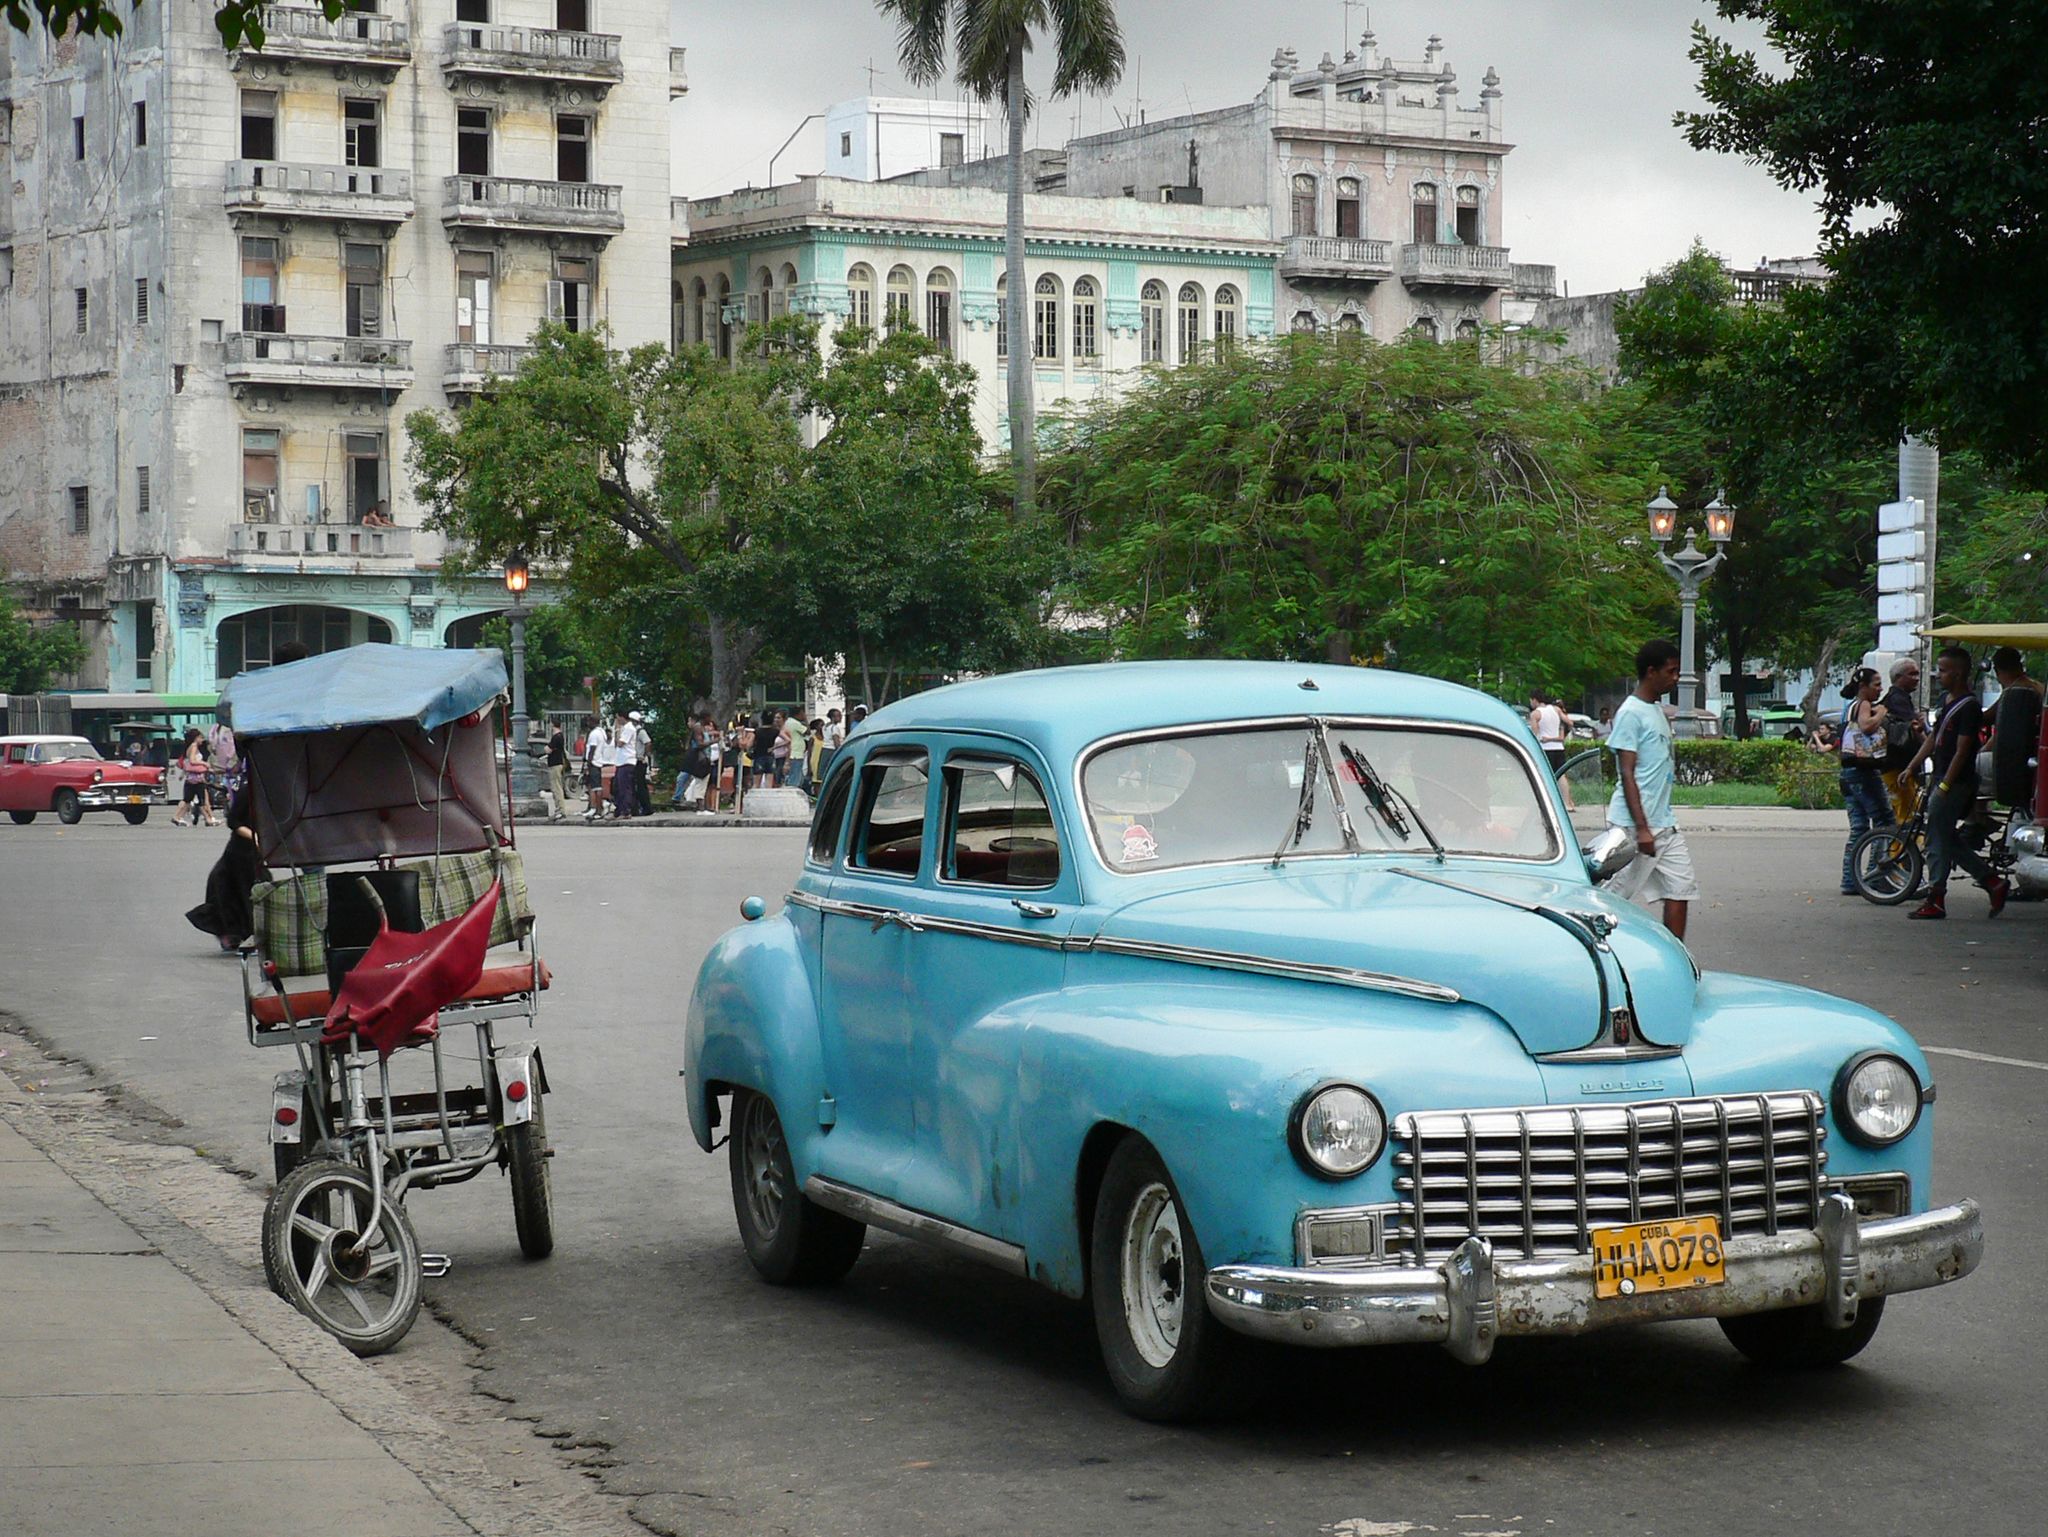 El visado de turista de Cuba permite ahora una estancia de 90 días